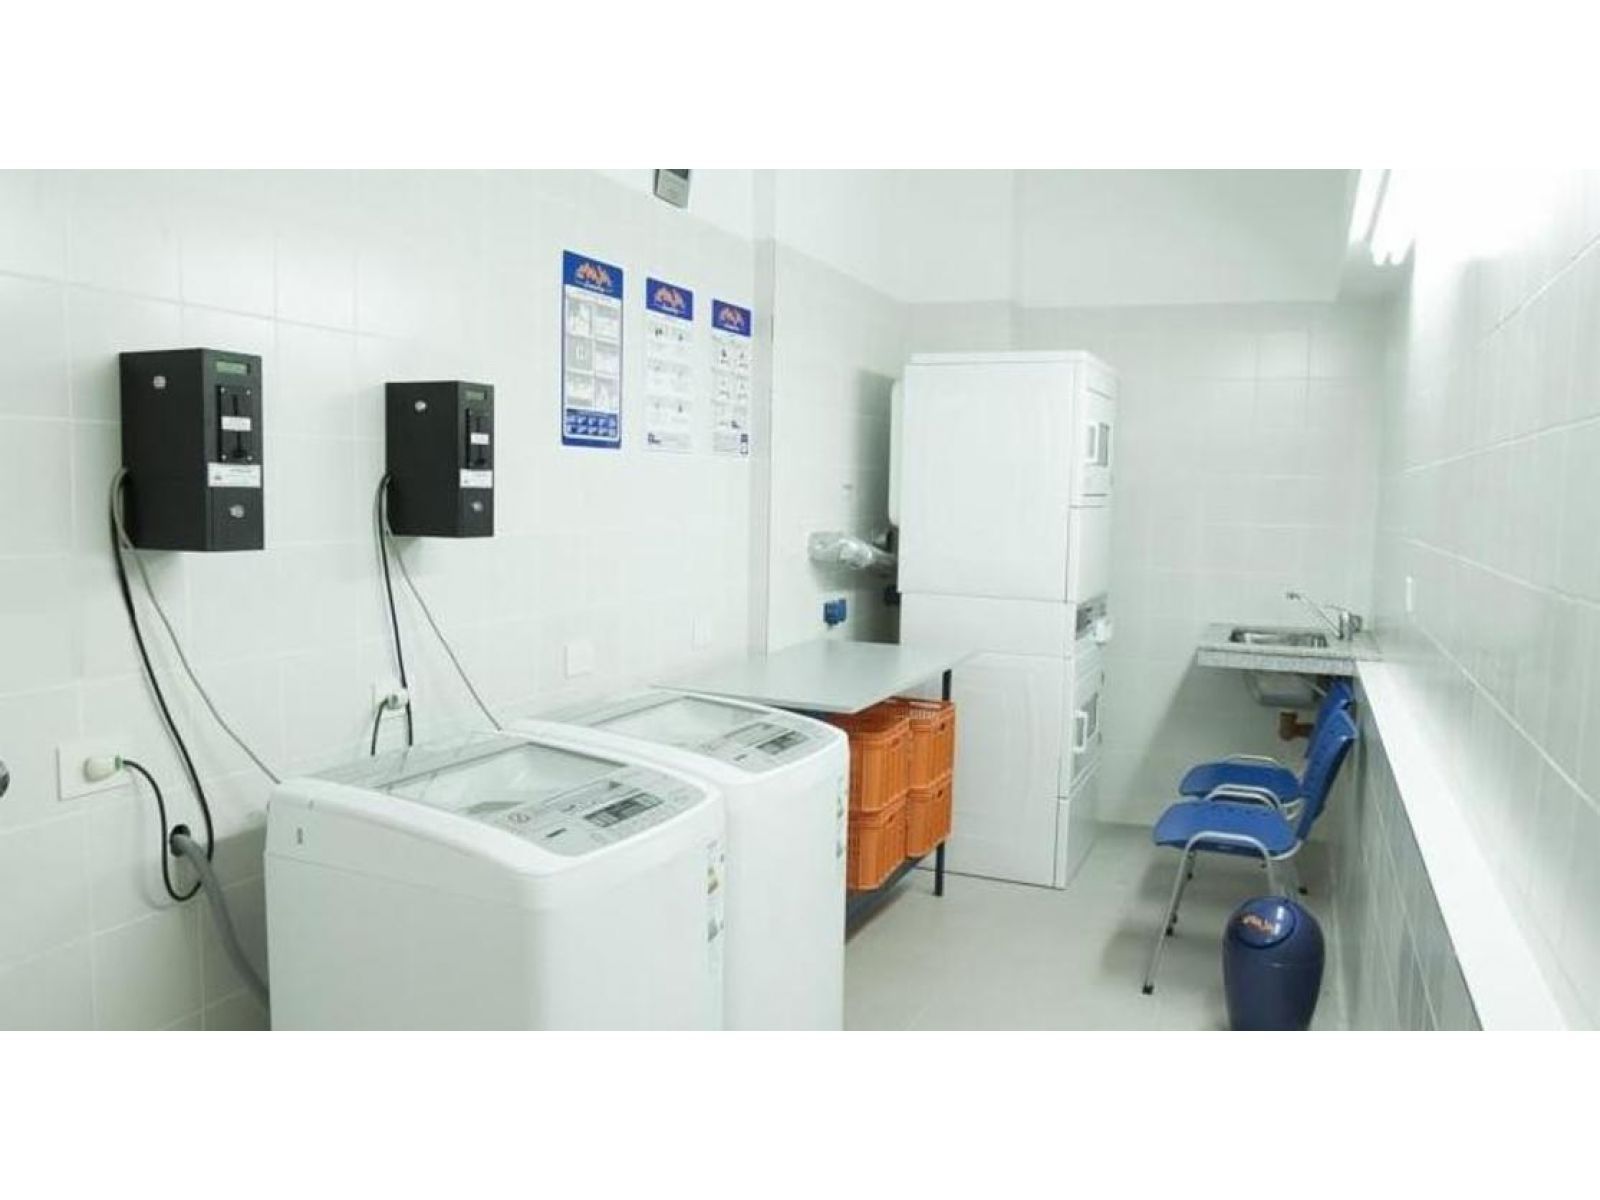 Duplex de Dos Ambientes, equipado y amoblado, Frente al Hospital Italiano, Almagro, USD 550